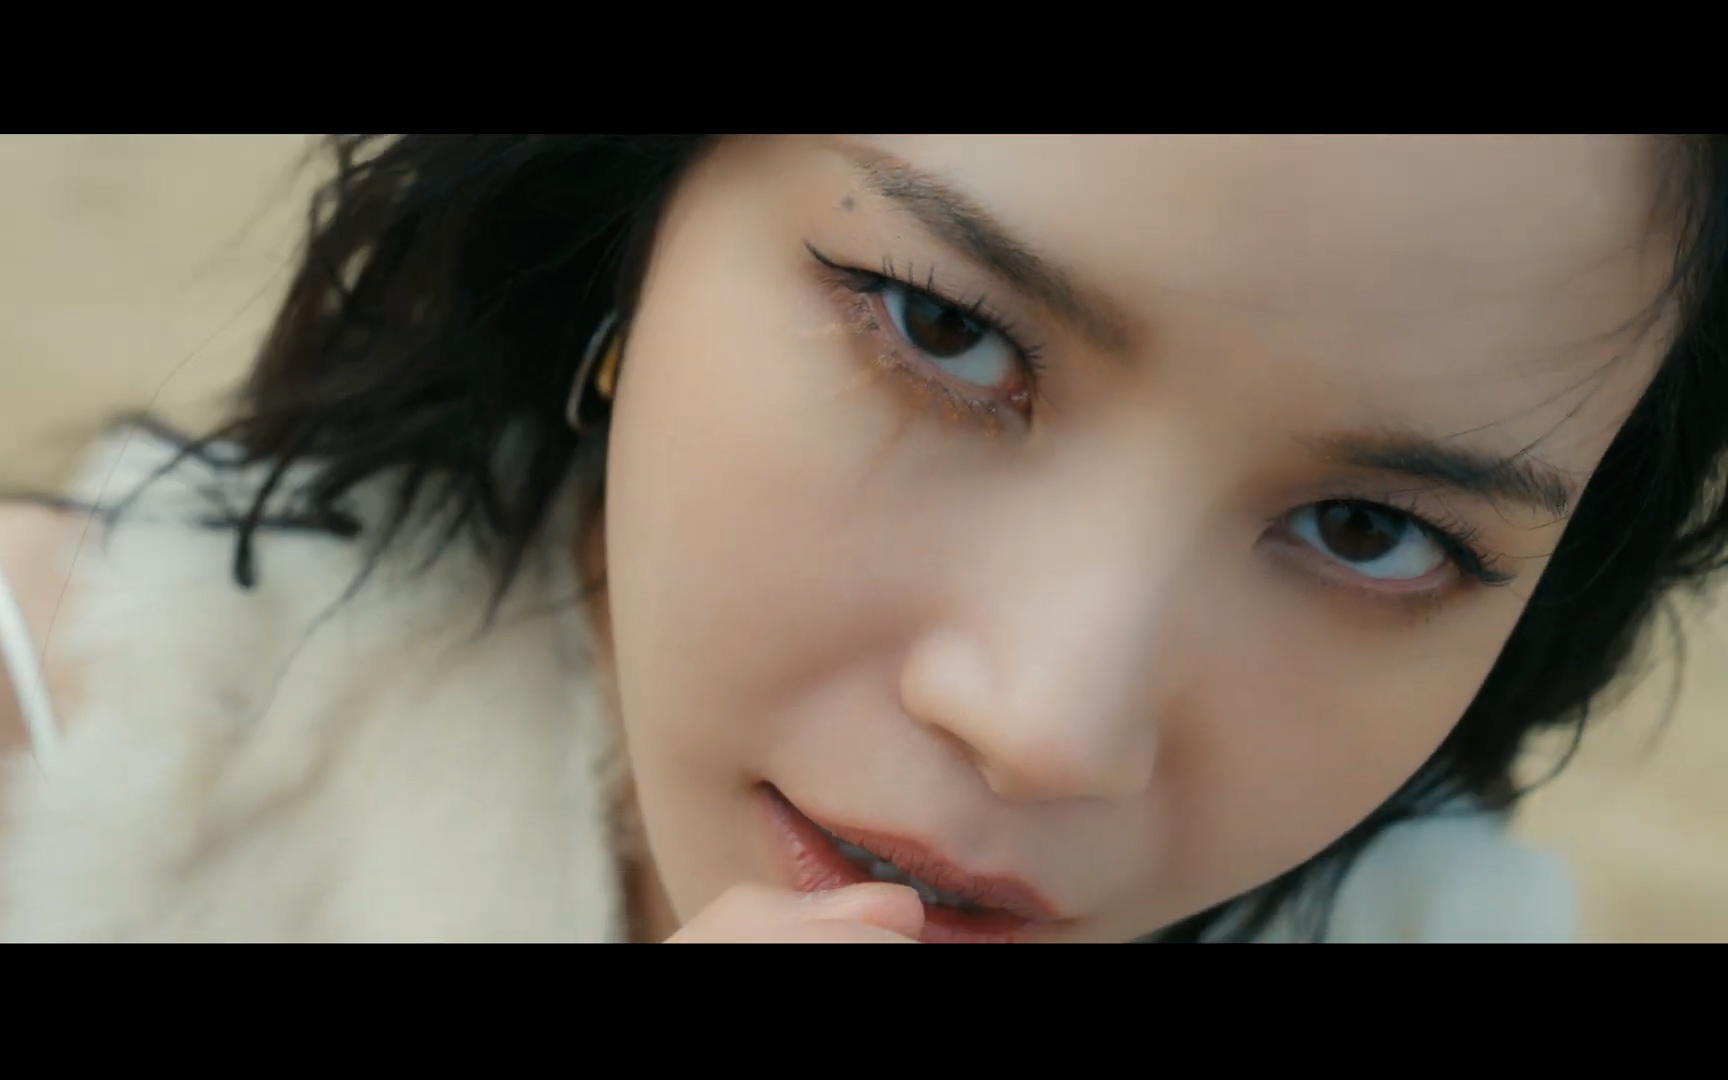 [预告] Solar颂乐 迷你2辑回归主打曲'But I' MV预告2公开丨好狂野的摇滚仙！！！